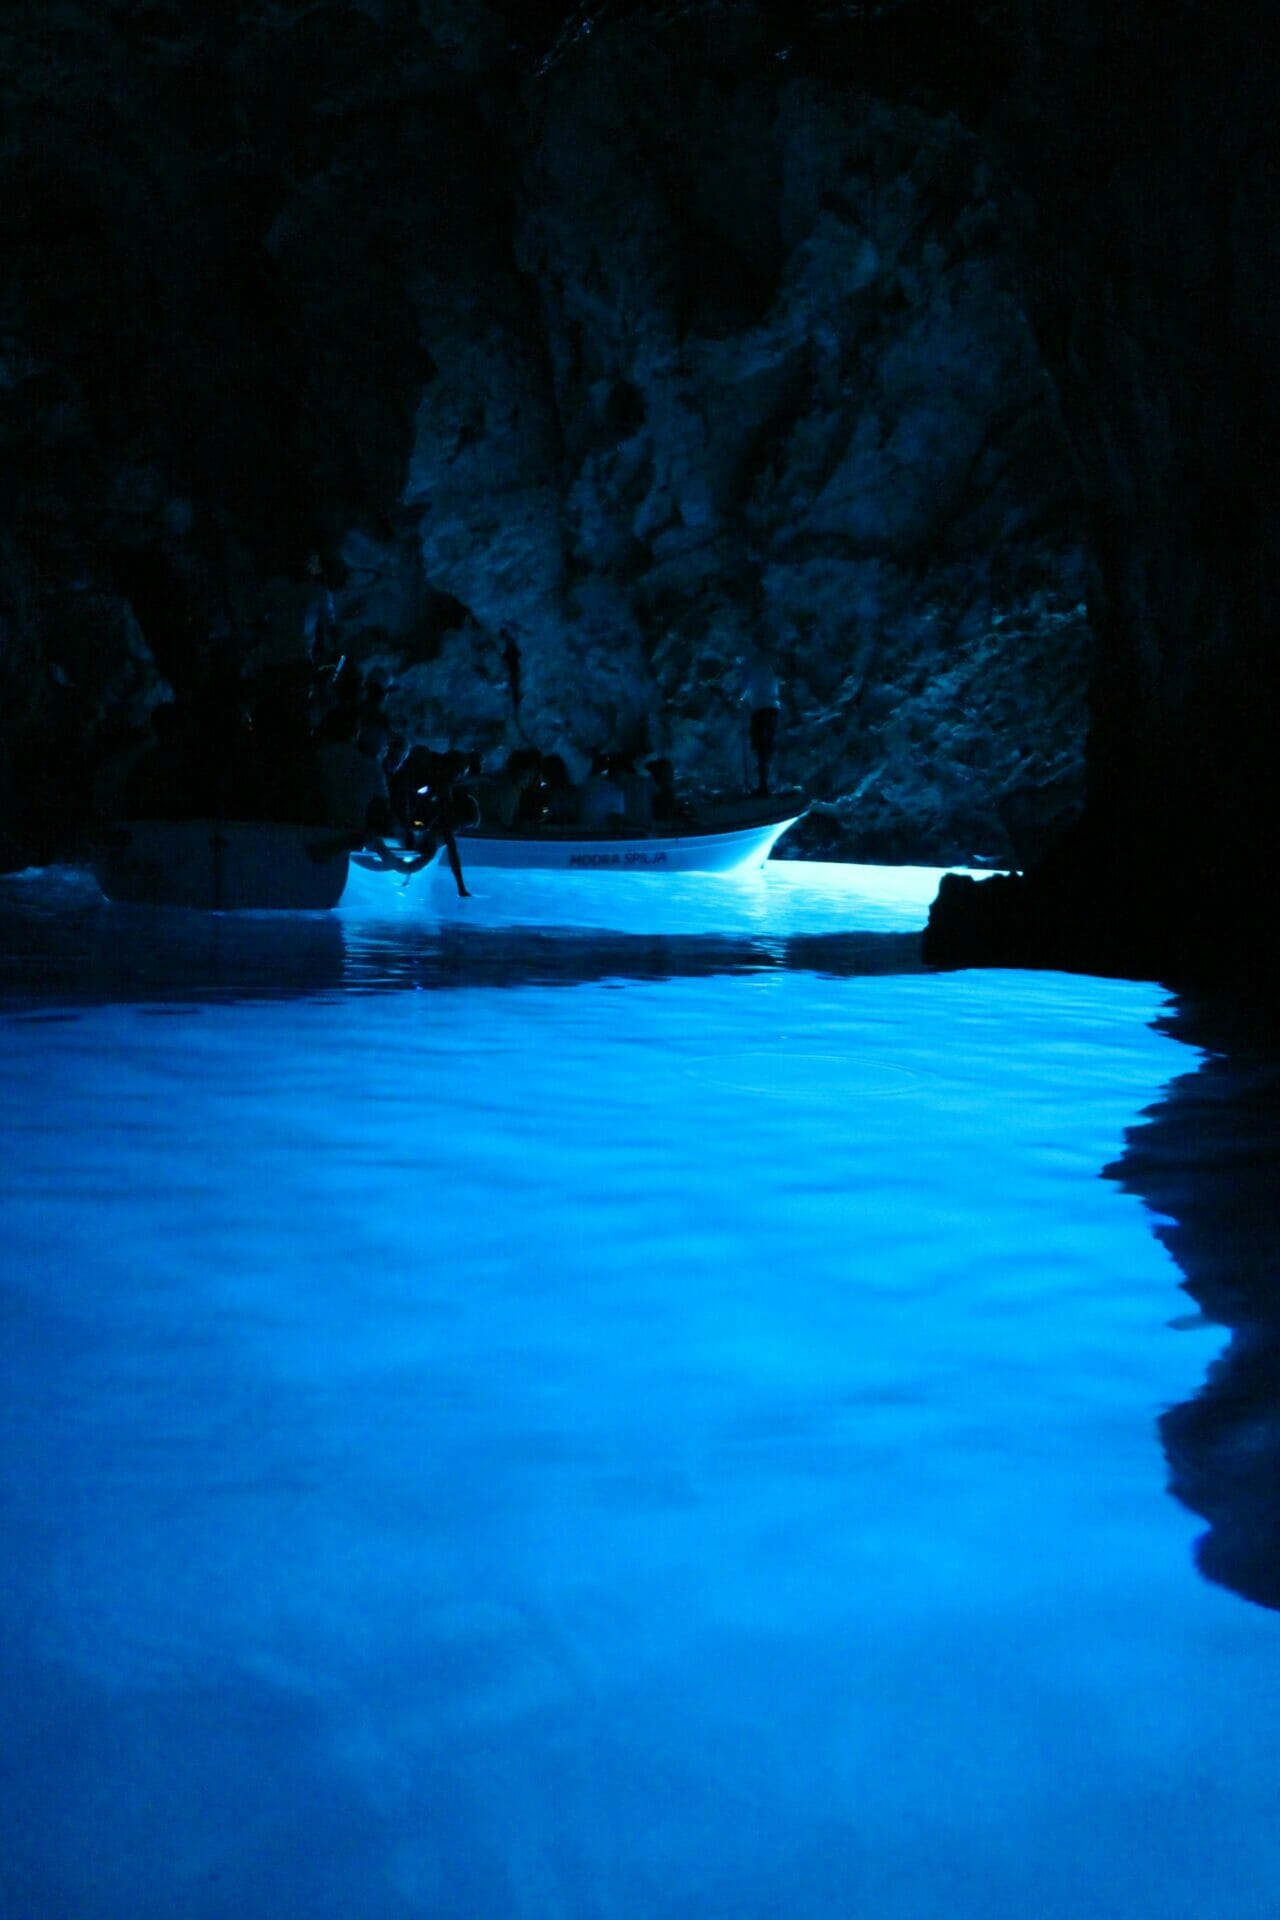 blue cave split